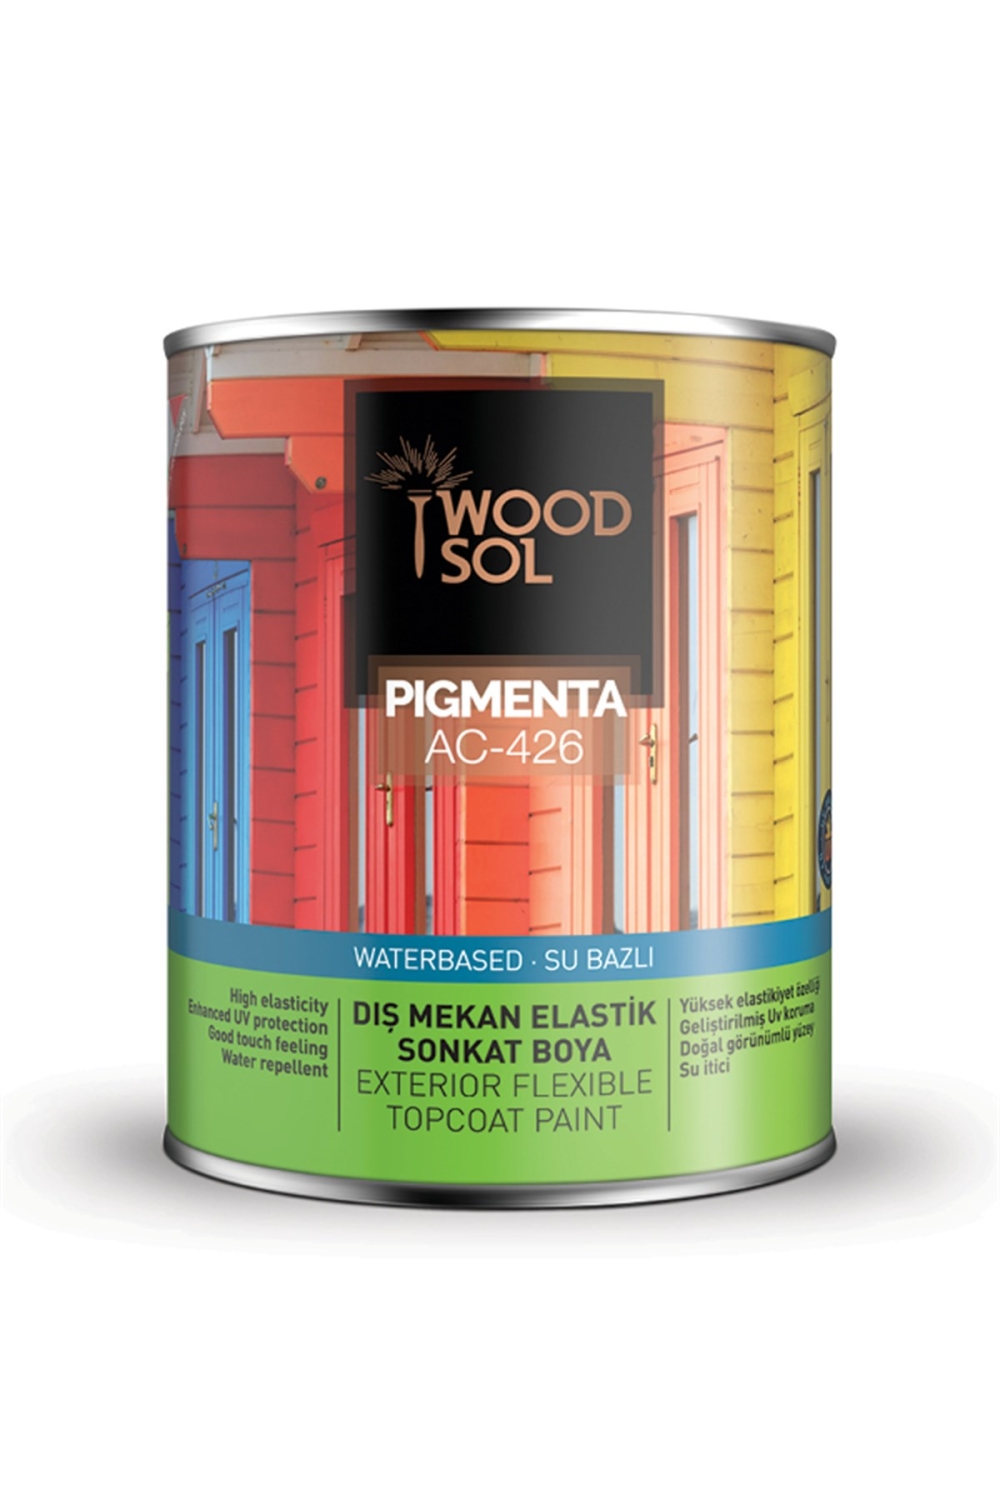 Woodsol Pigmenta Elastik Sonkat Ahşap Boya 0.75 l - 1